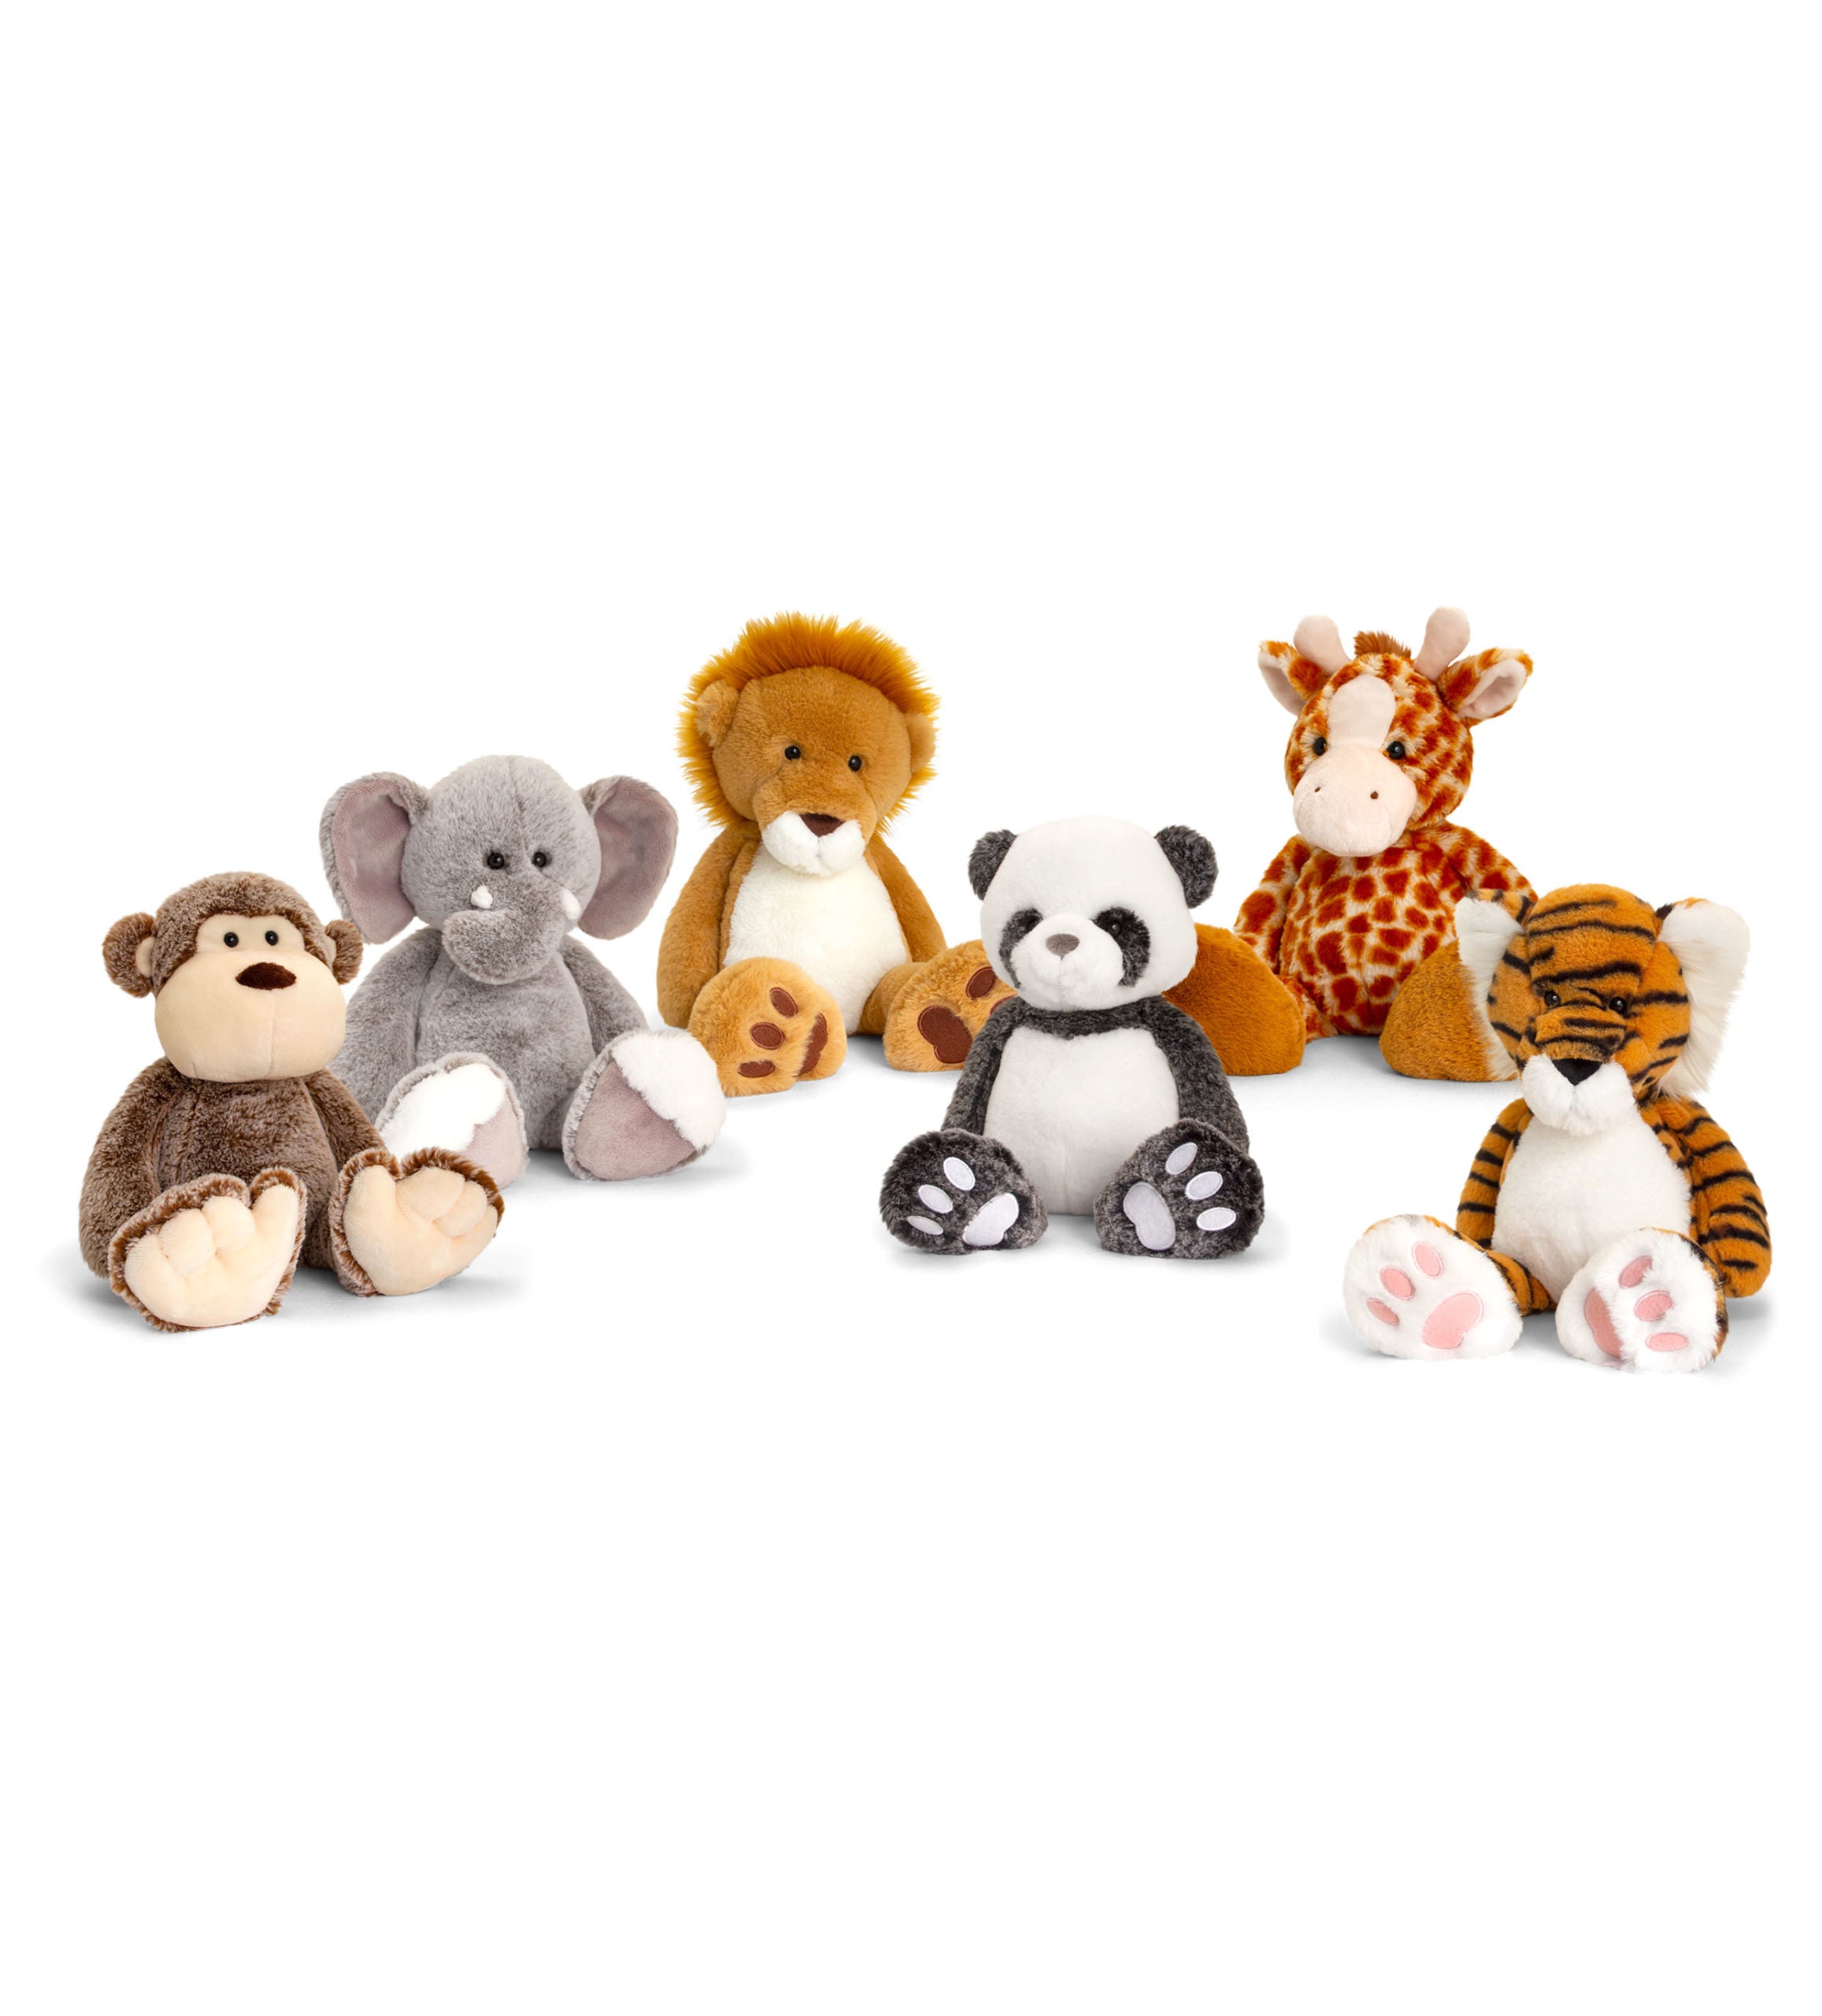 Shop a Wild Assortment of Stuffed Animals